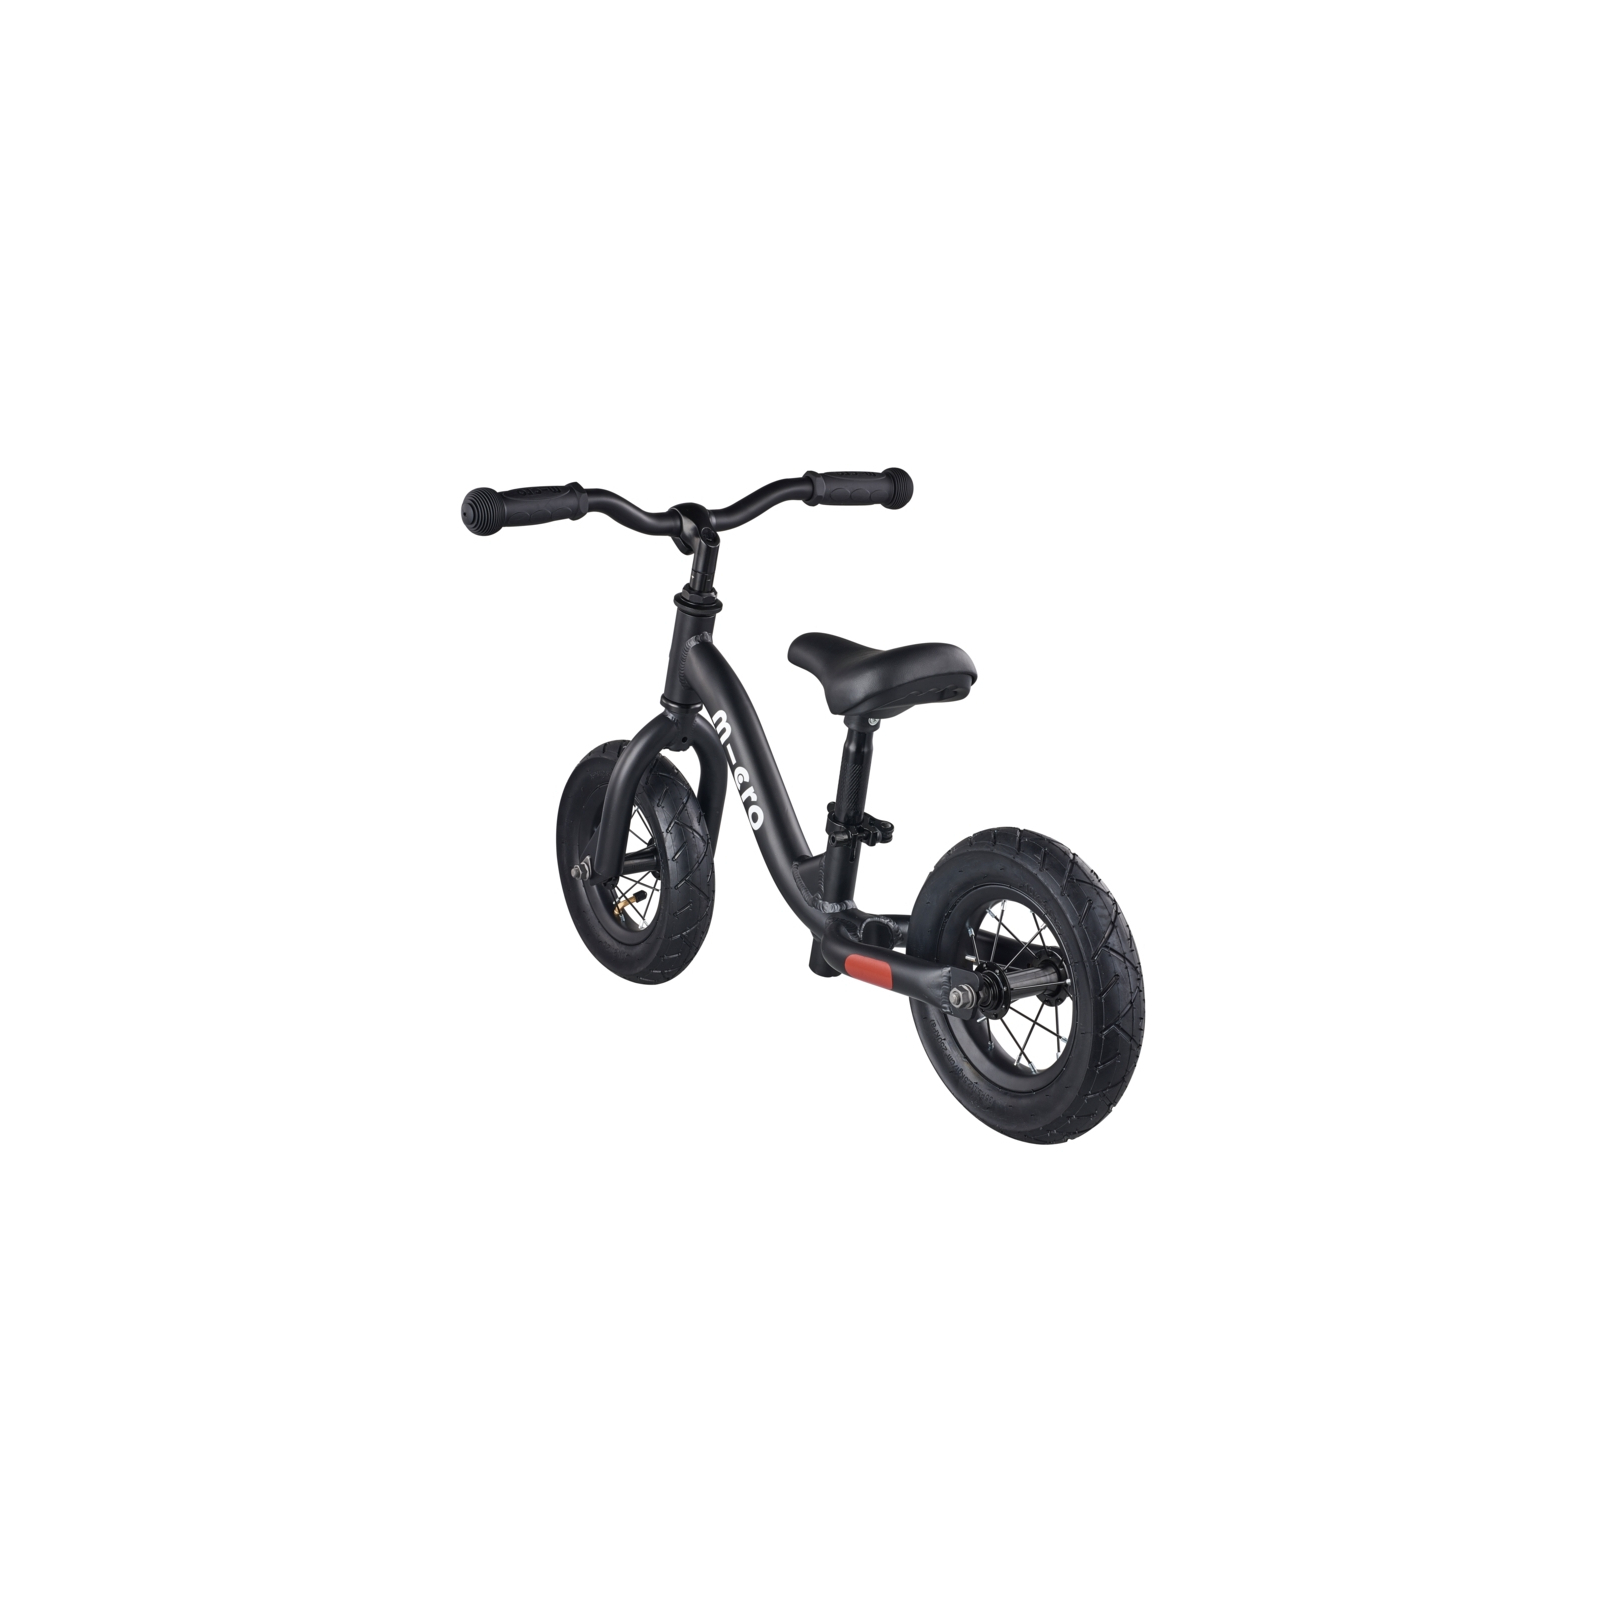 Біговел Micro Balance bike Black (GB0030) зображення 3